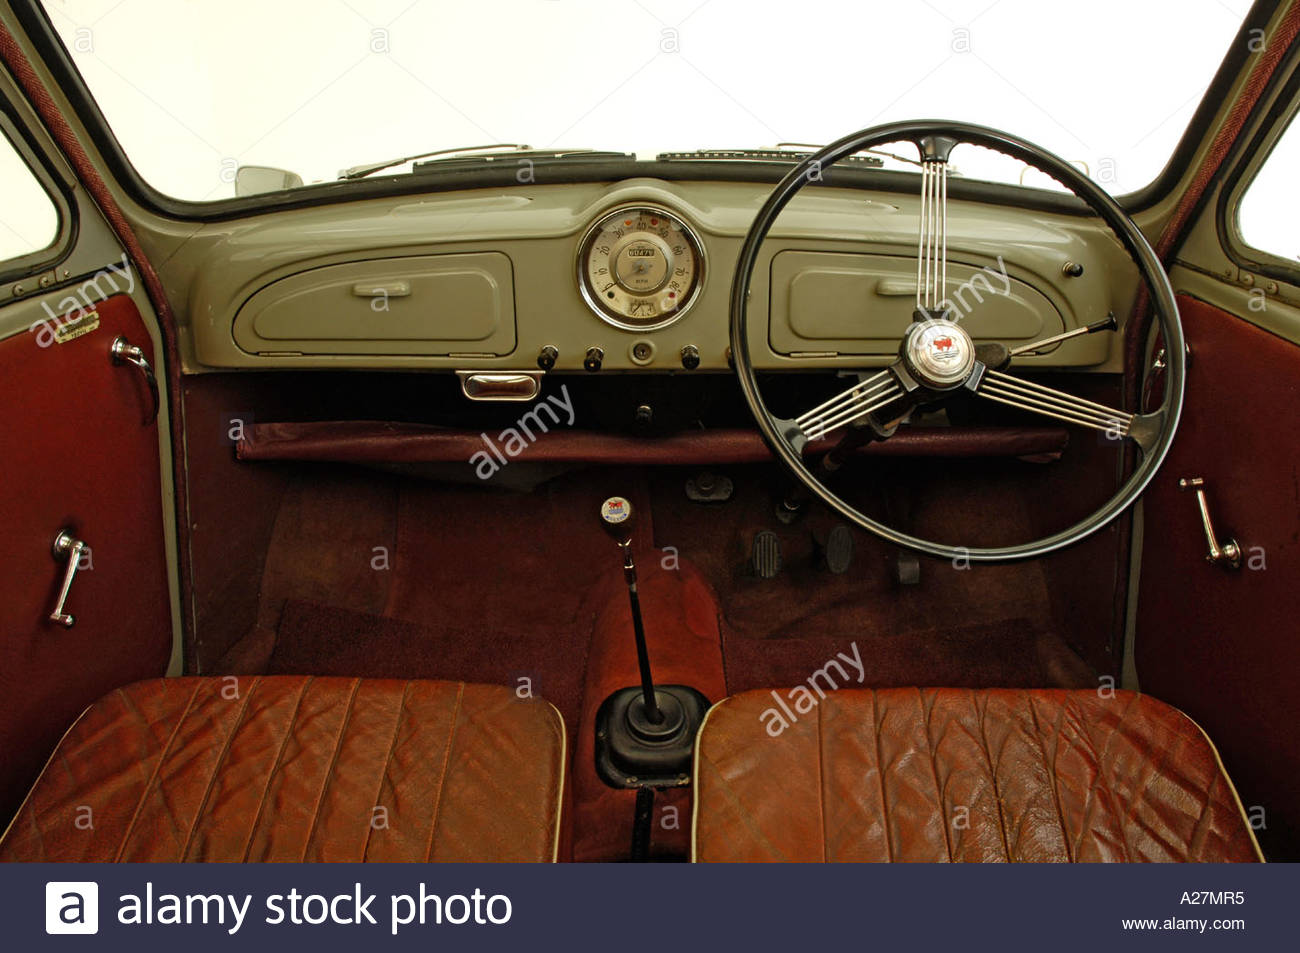 1957 Morris Minor dash.jpg